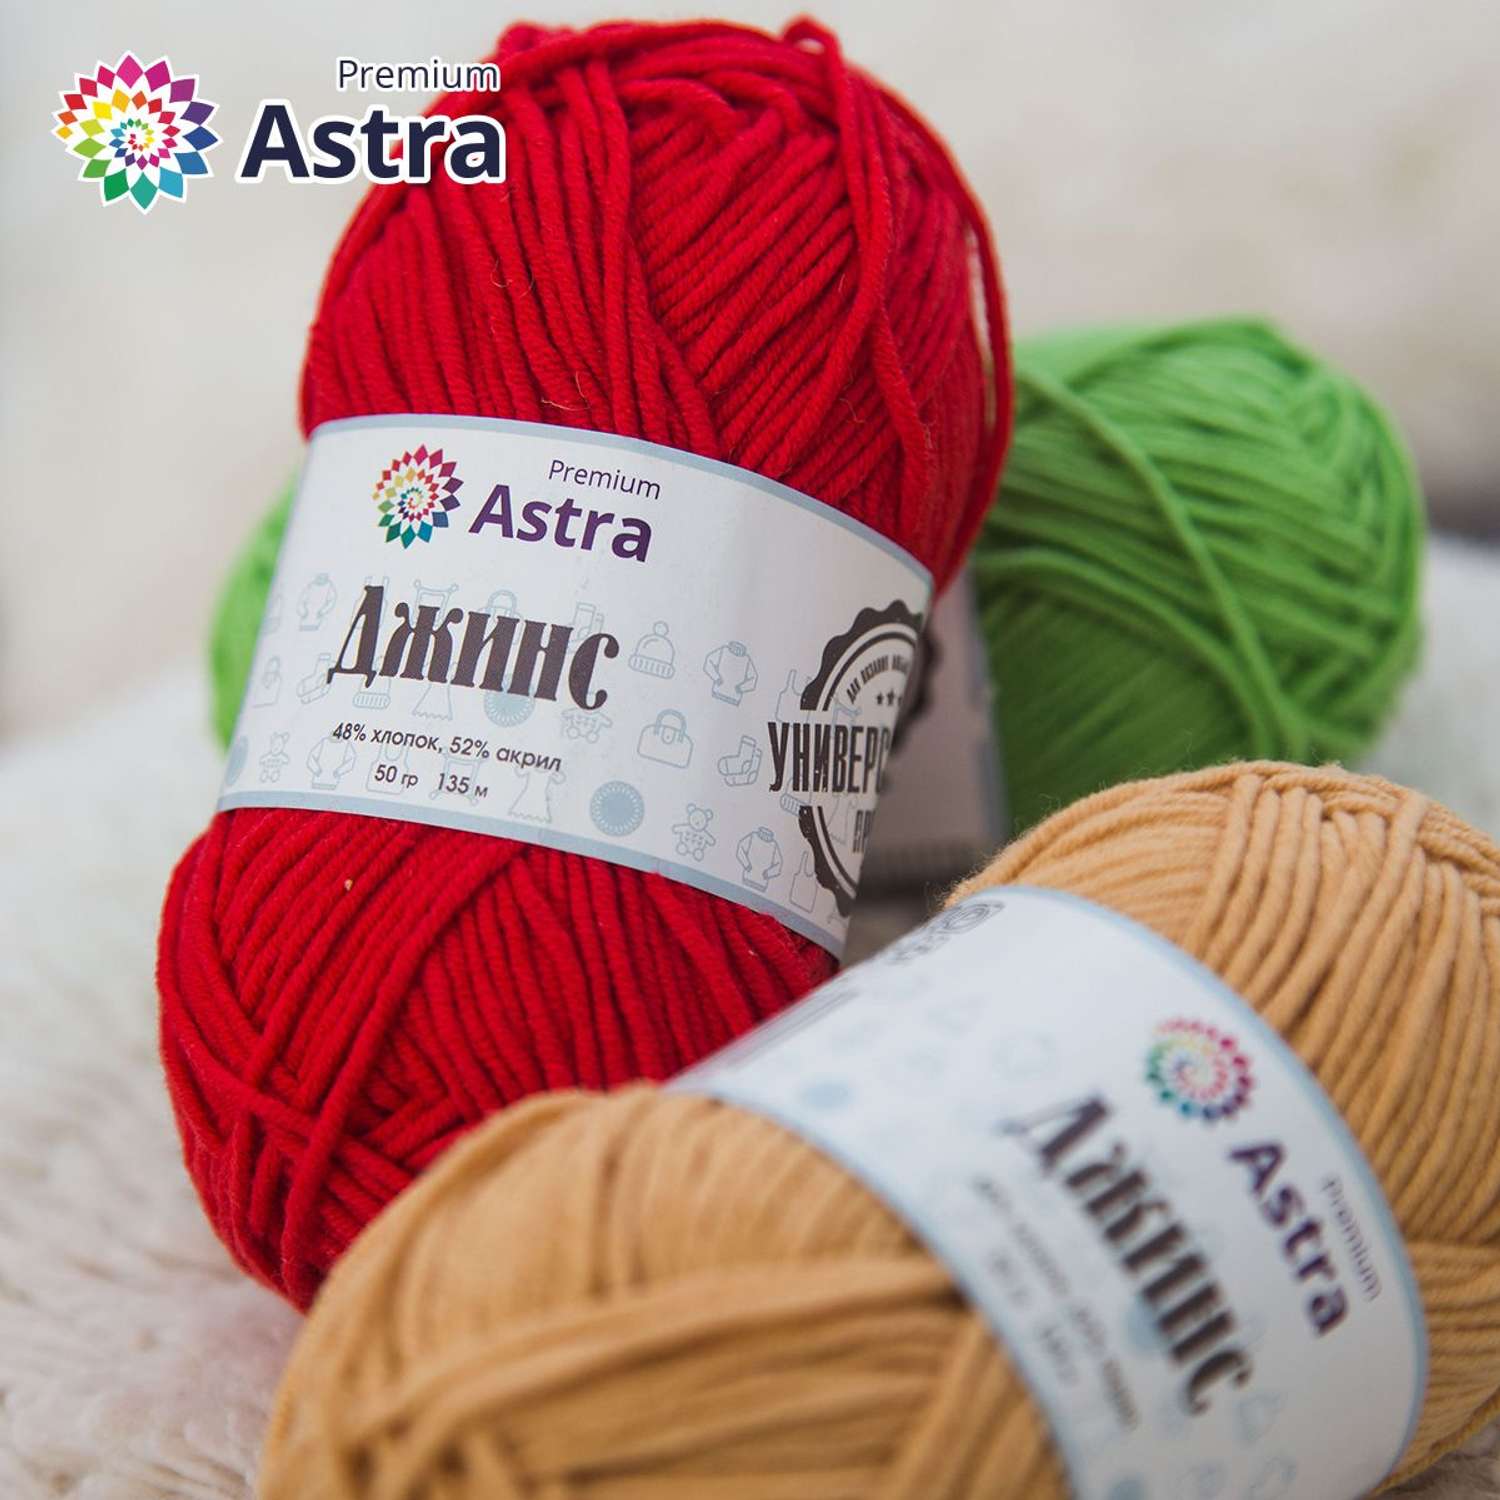 Пряжа для вязания Astra Premium джинс для повседневной одежды акрил хлопок 50 гр 135 м 450 зеленый 4 мотка - фото 8